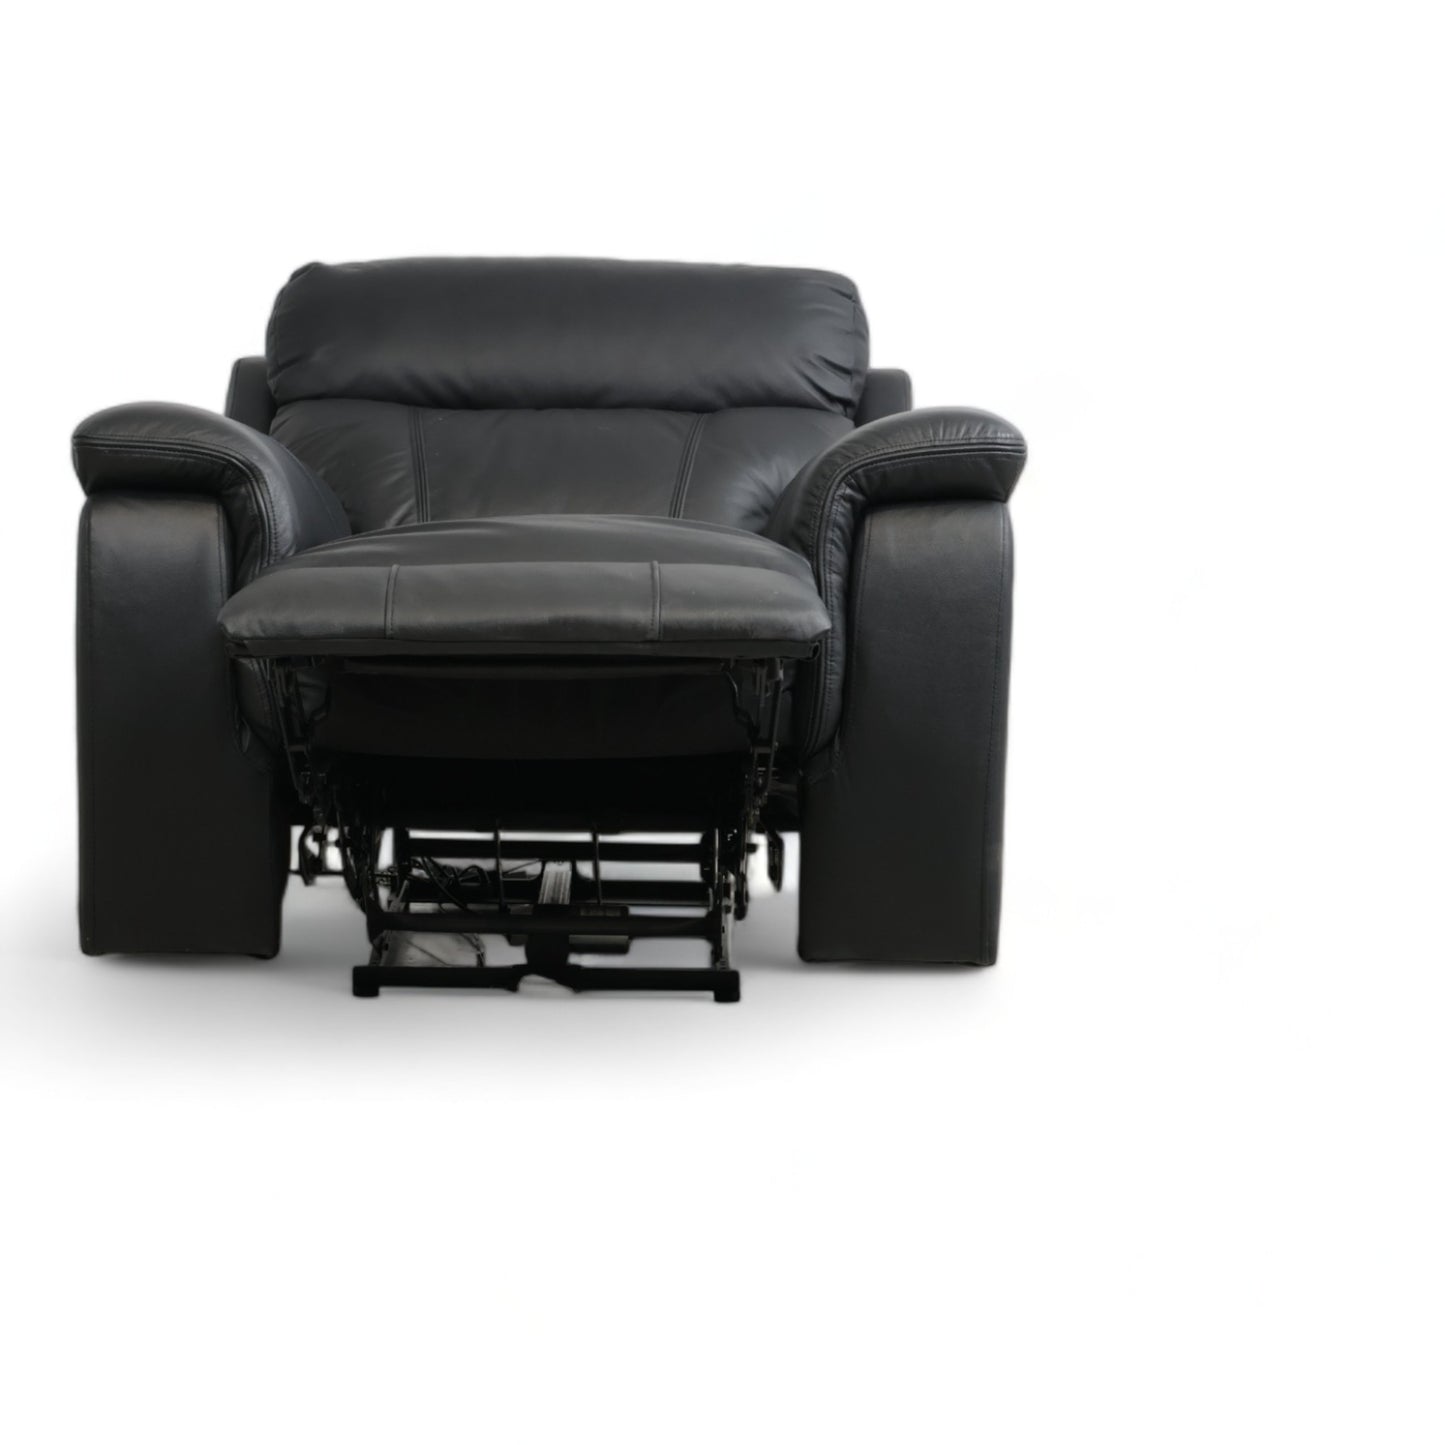 Nyrenset | Mayfield recliner fra A-Møbler